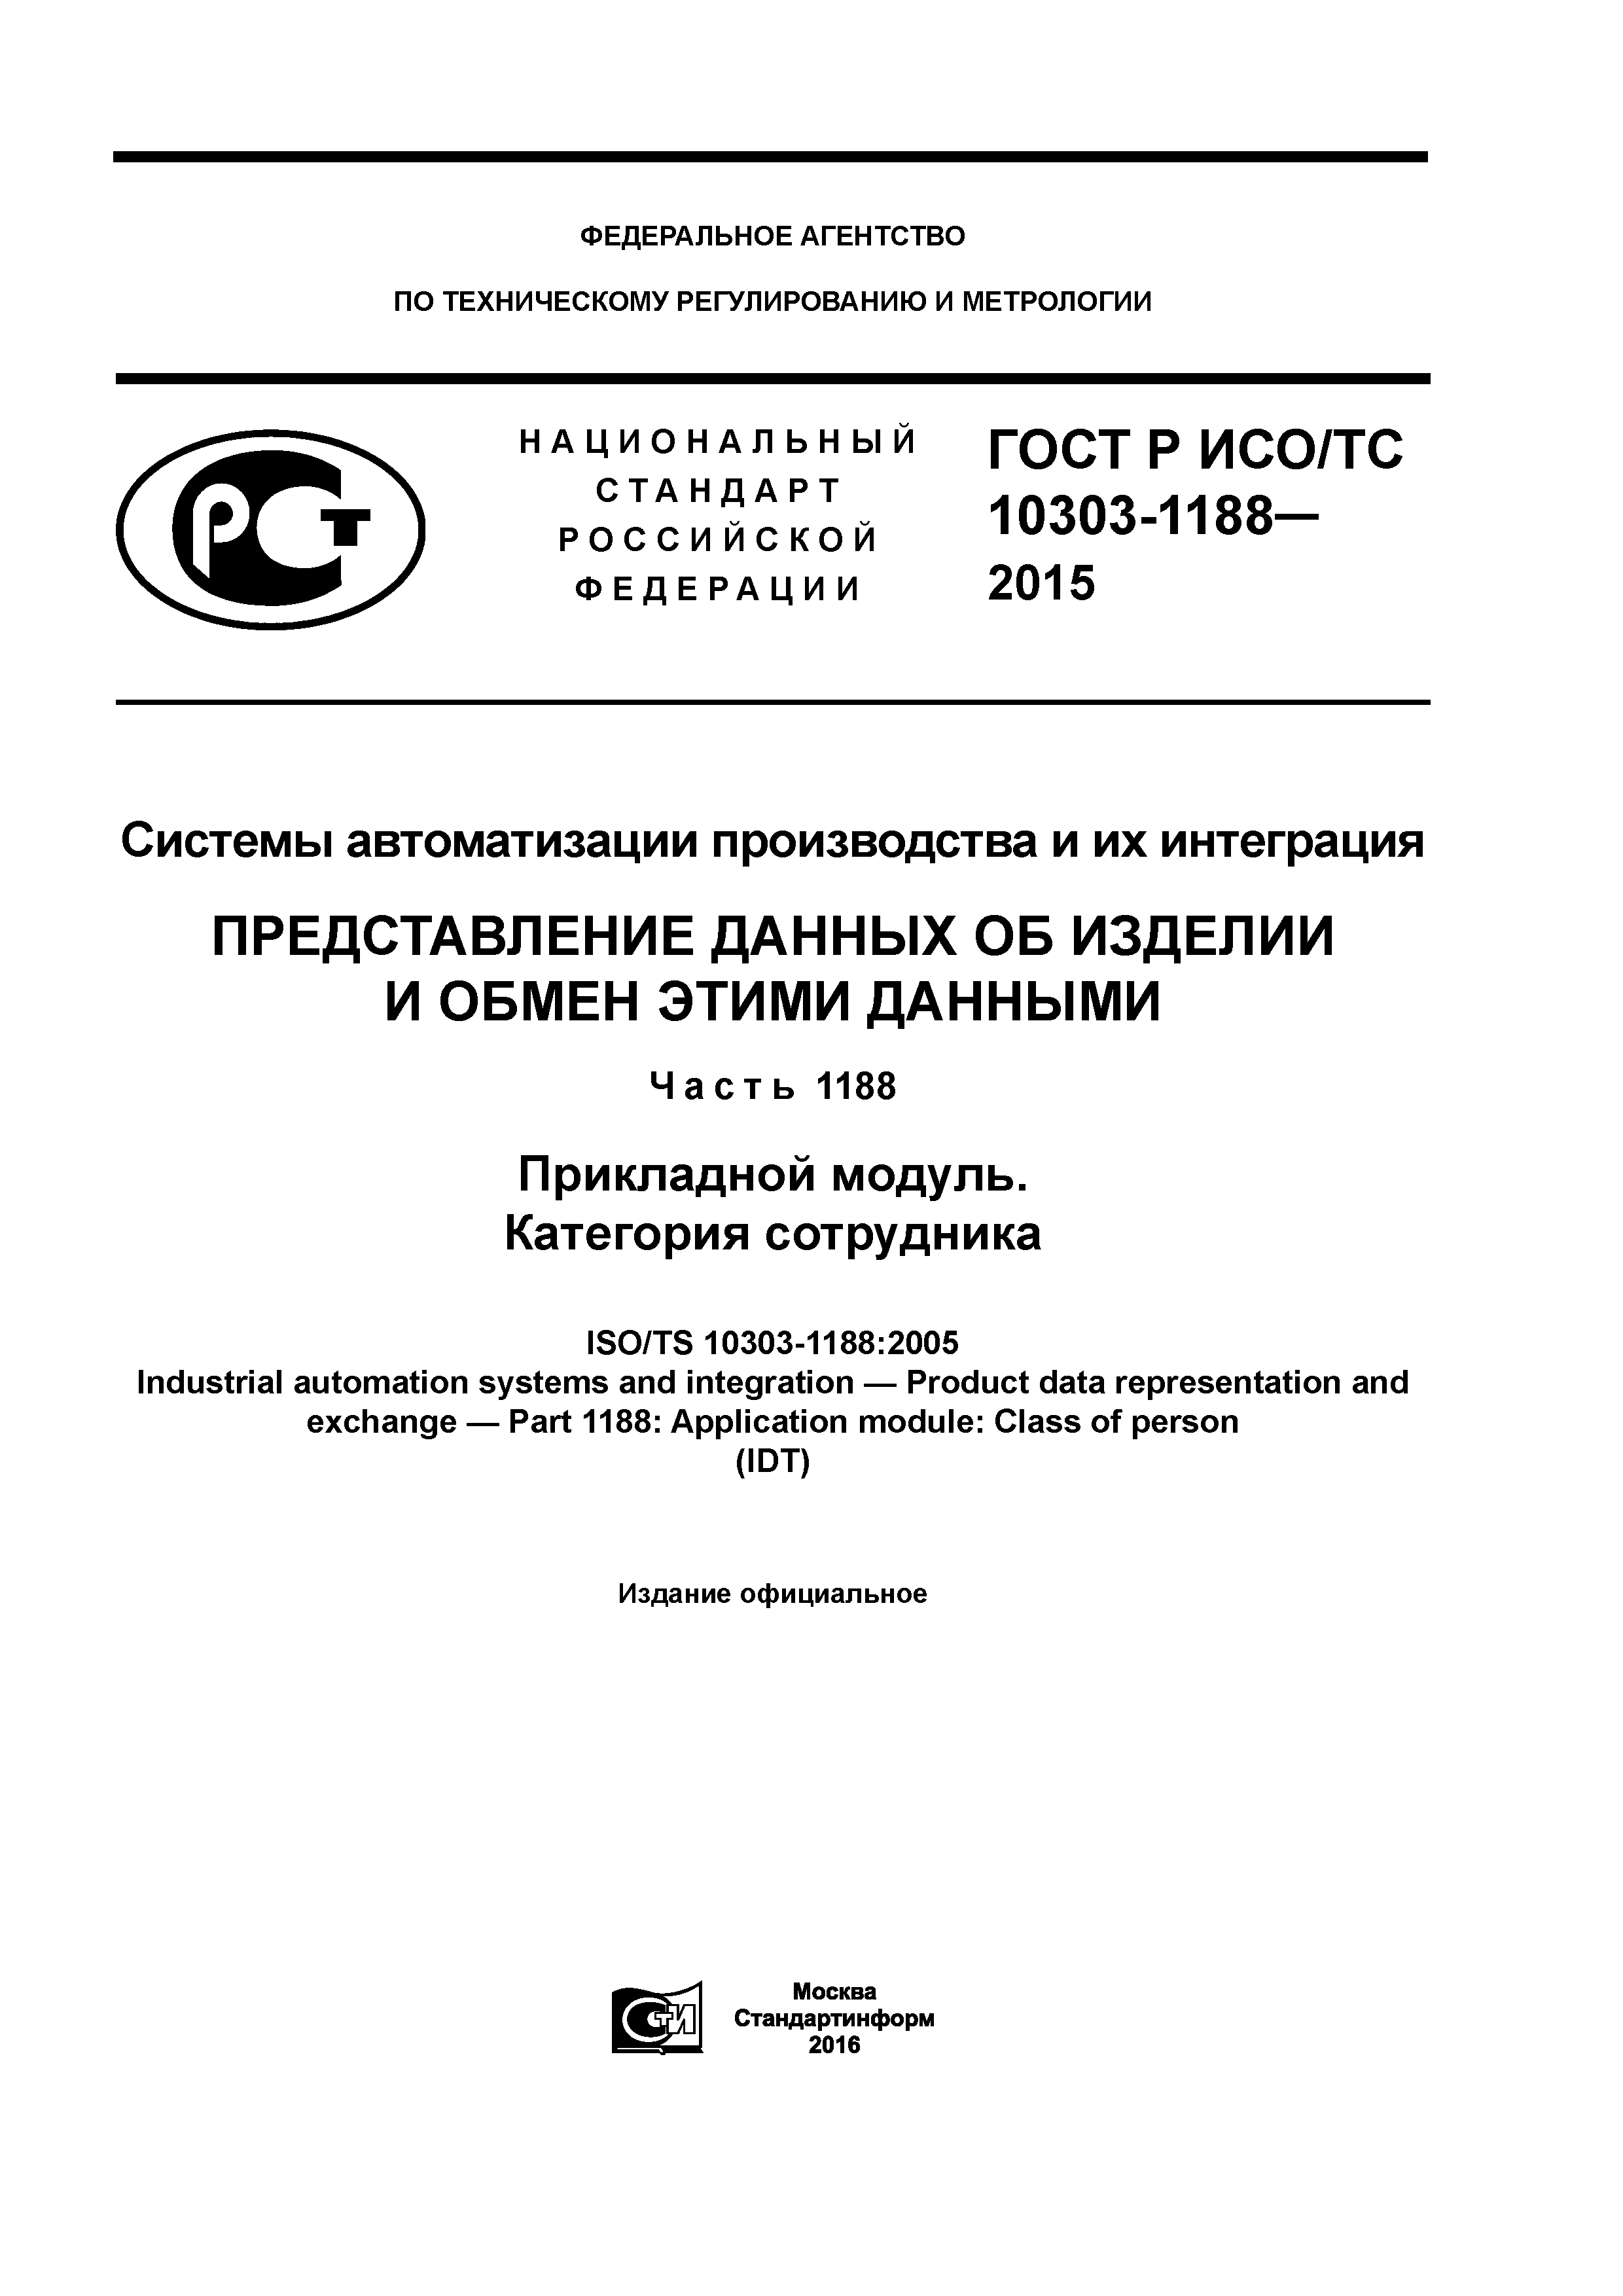 ГОСТ Р ИСО/ТС 10303-1188-2015